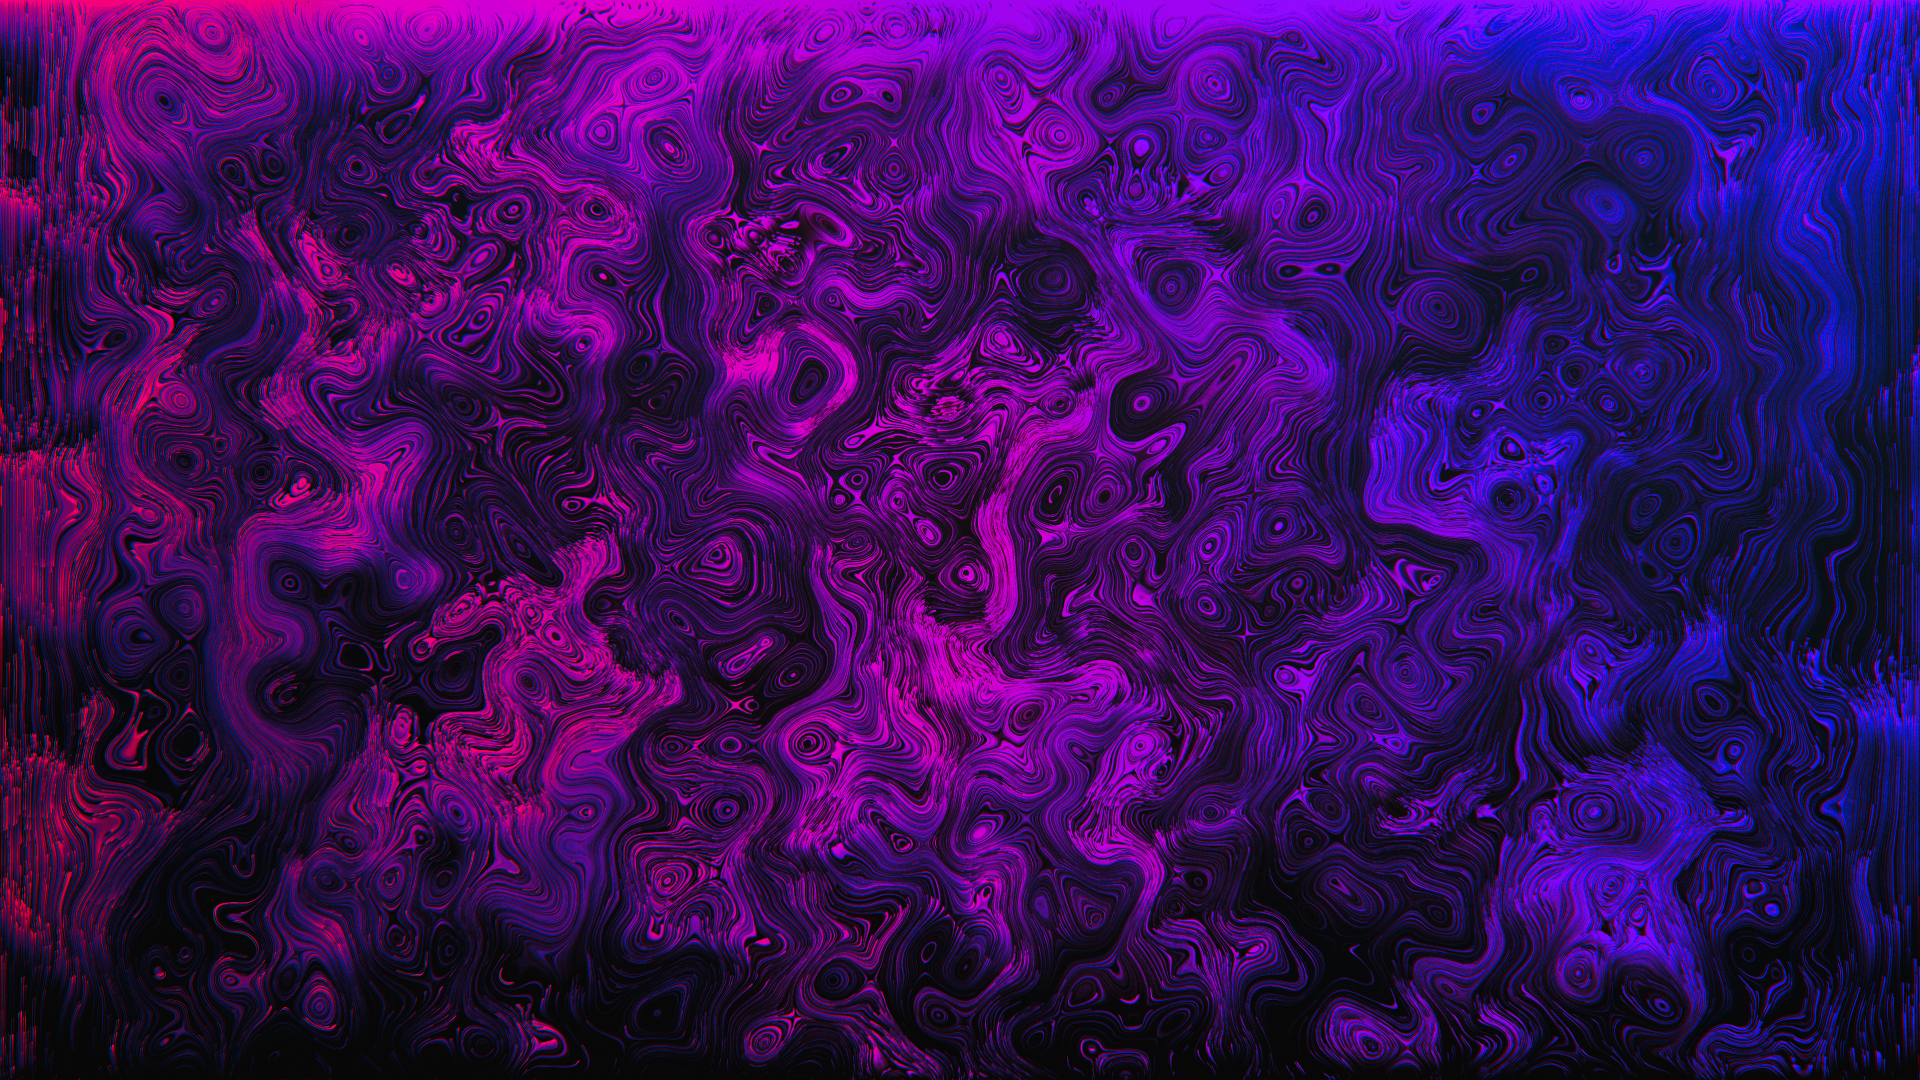 Purple Pc Wallpapers 4k Hd Purple Pc Backgrounds On Wallpaperbat